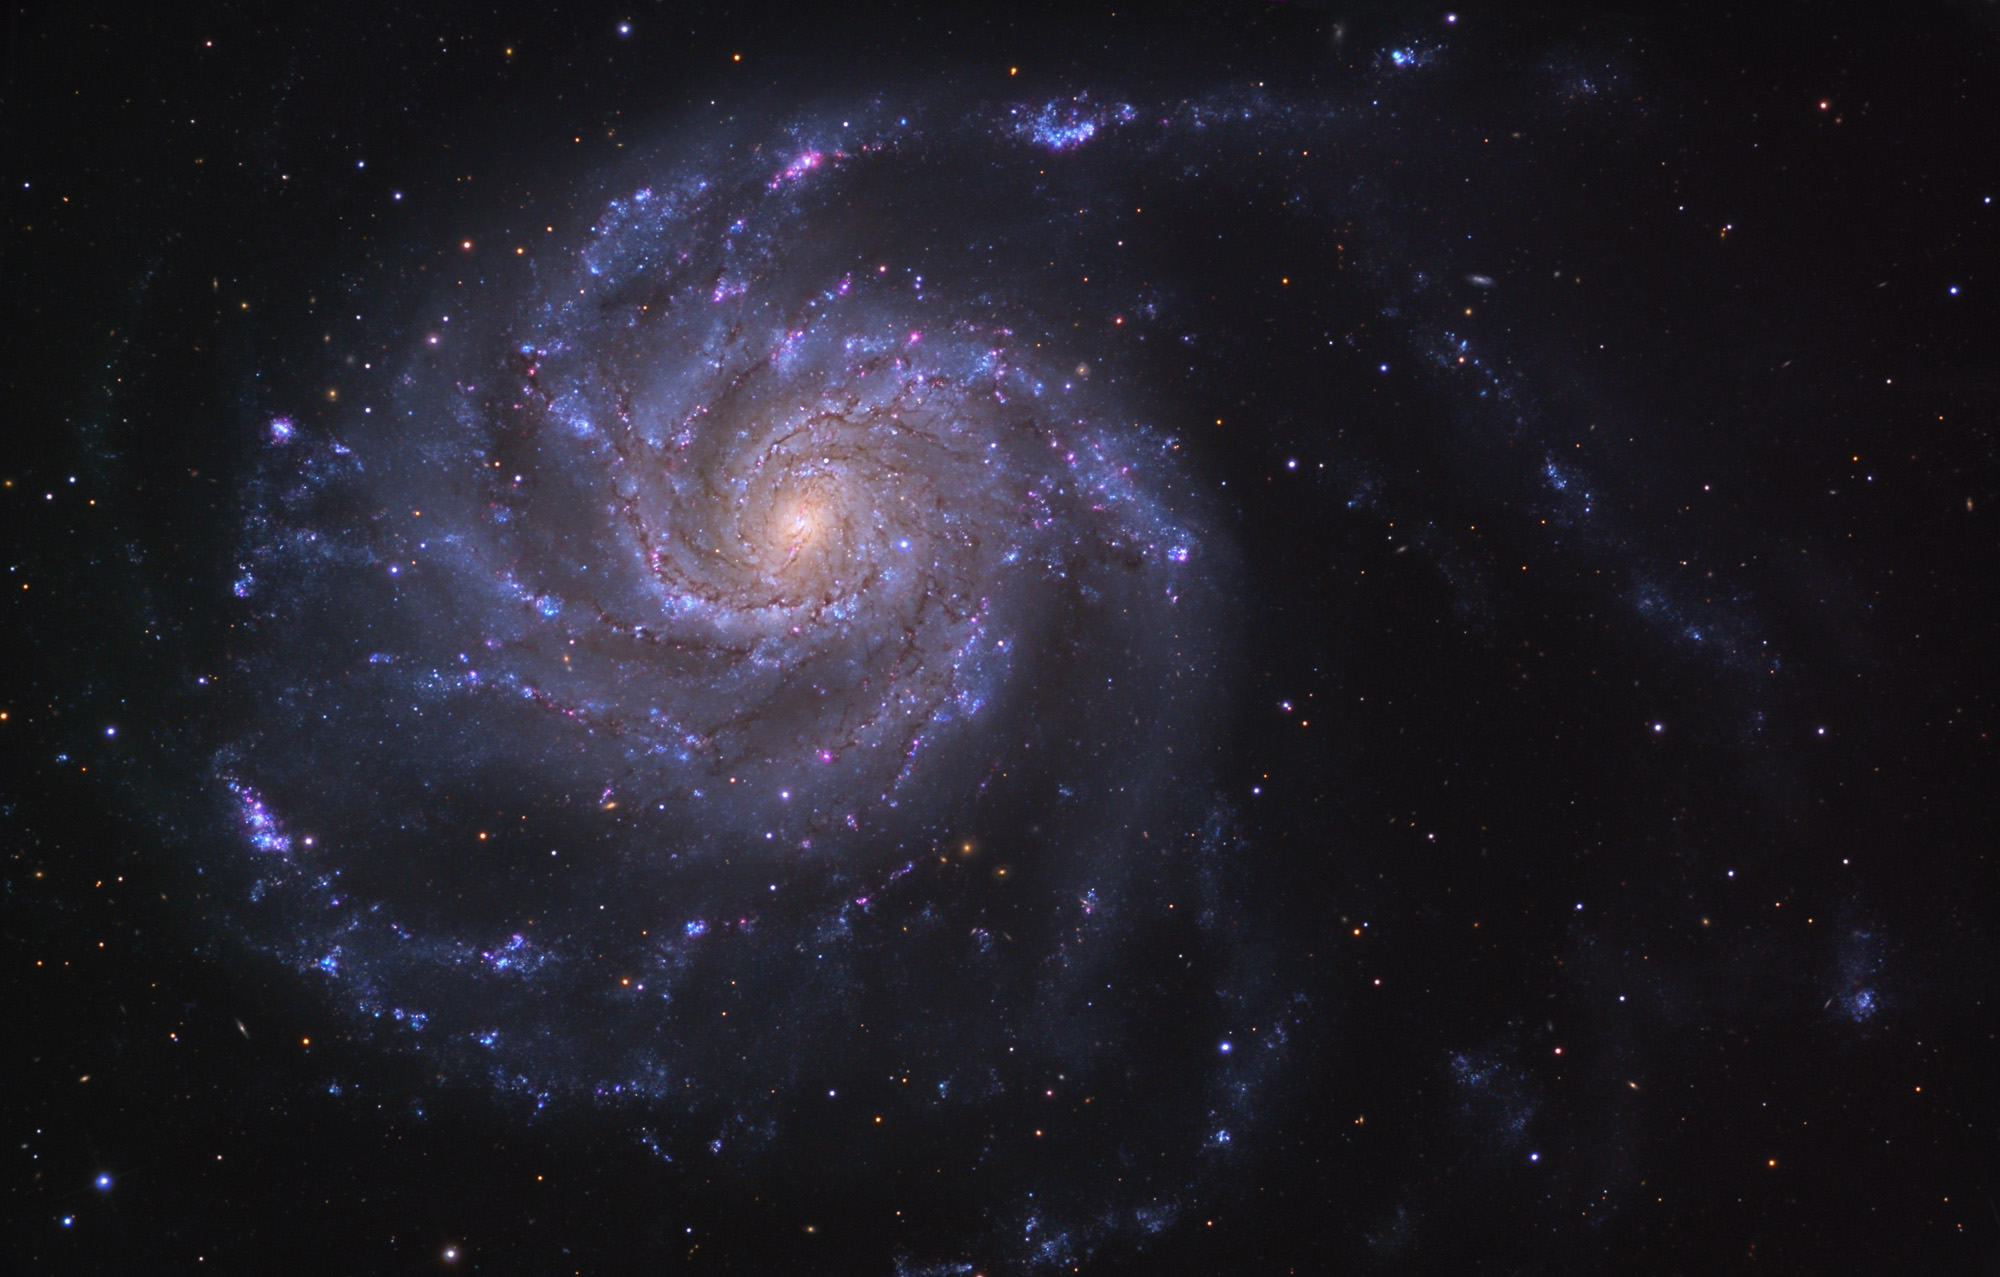 M101, galaxie spirale